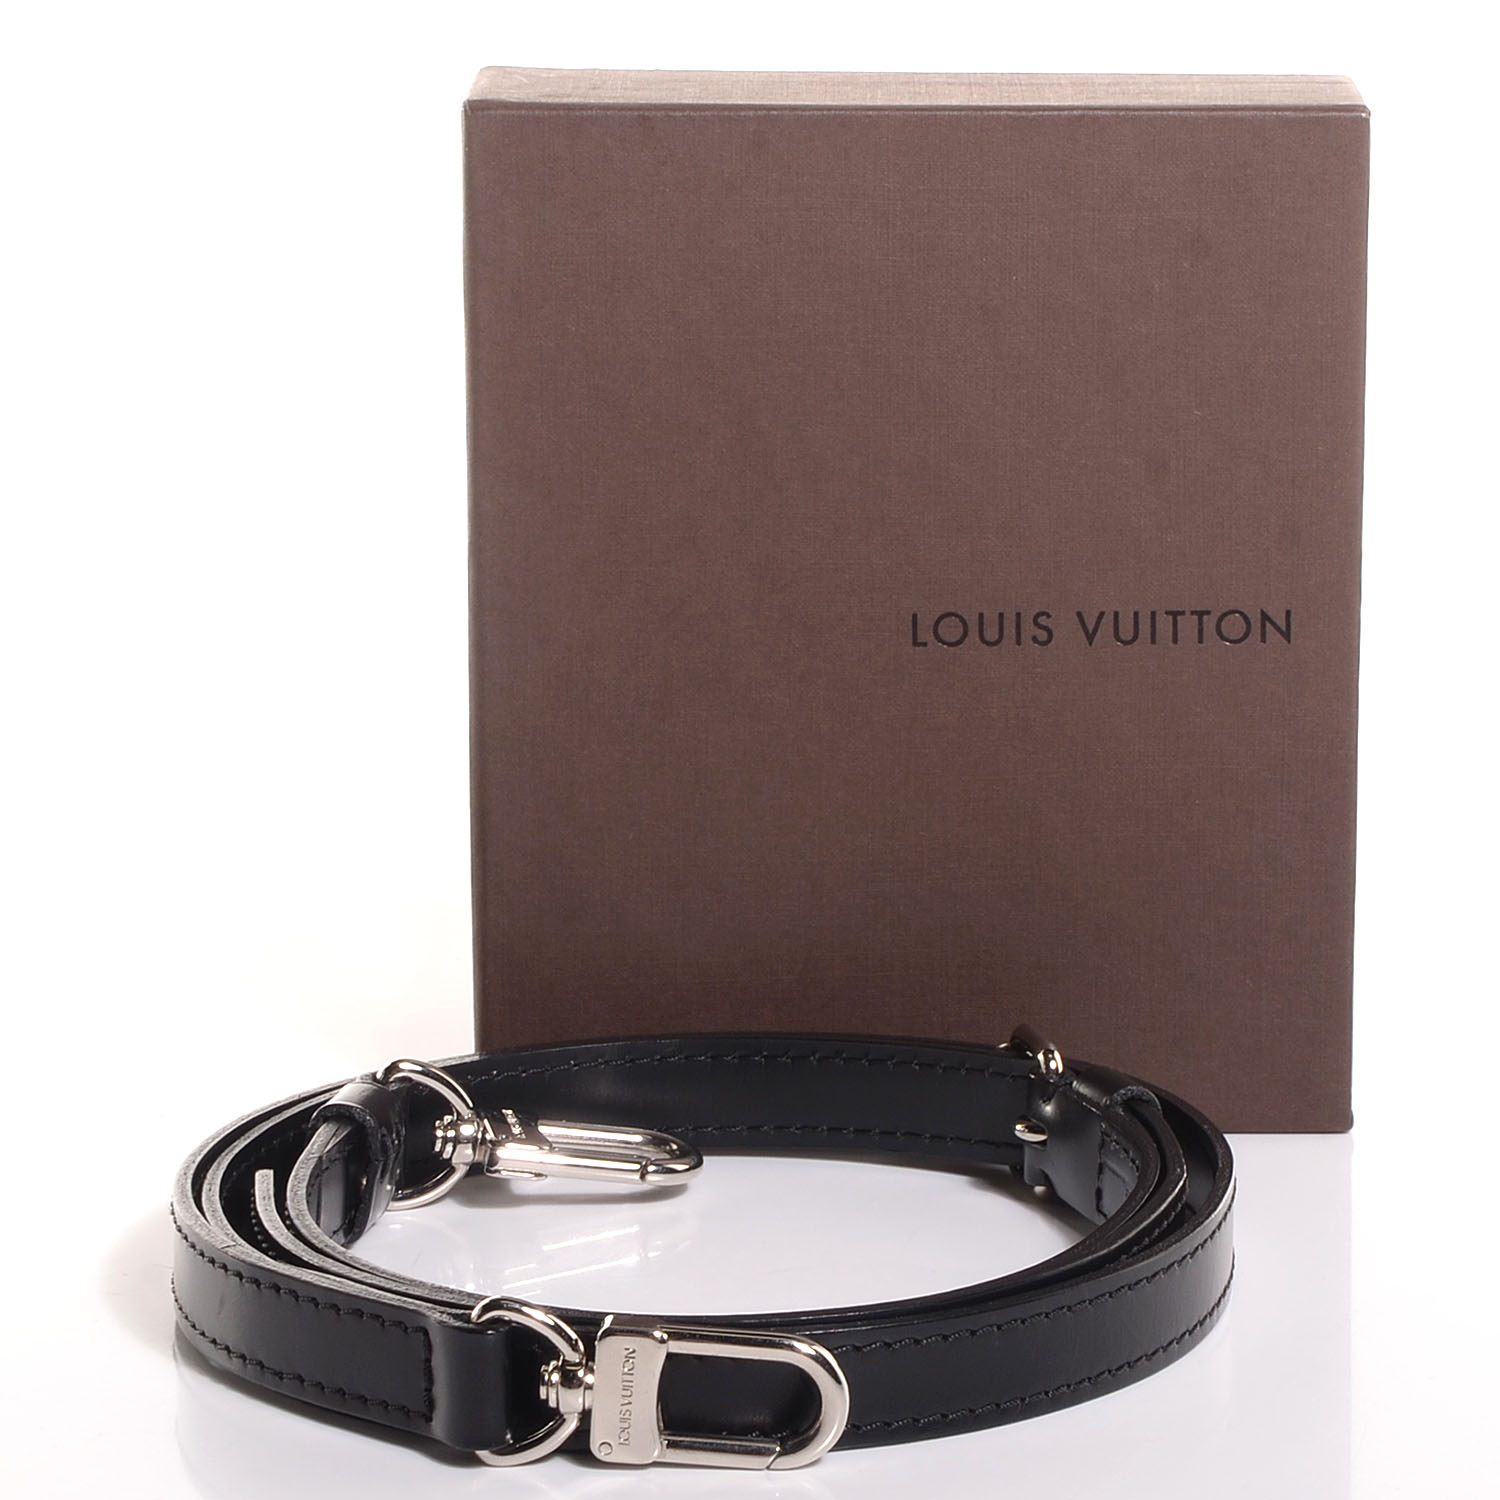 LOUIS VUITTON Leather Adjustable Shoulder Strap Black 89083